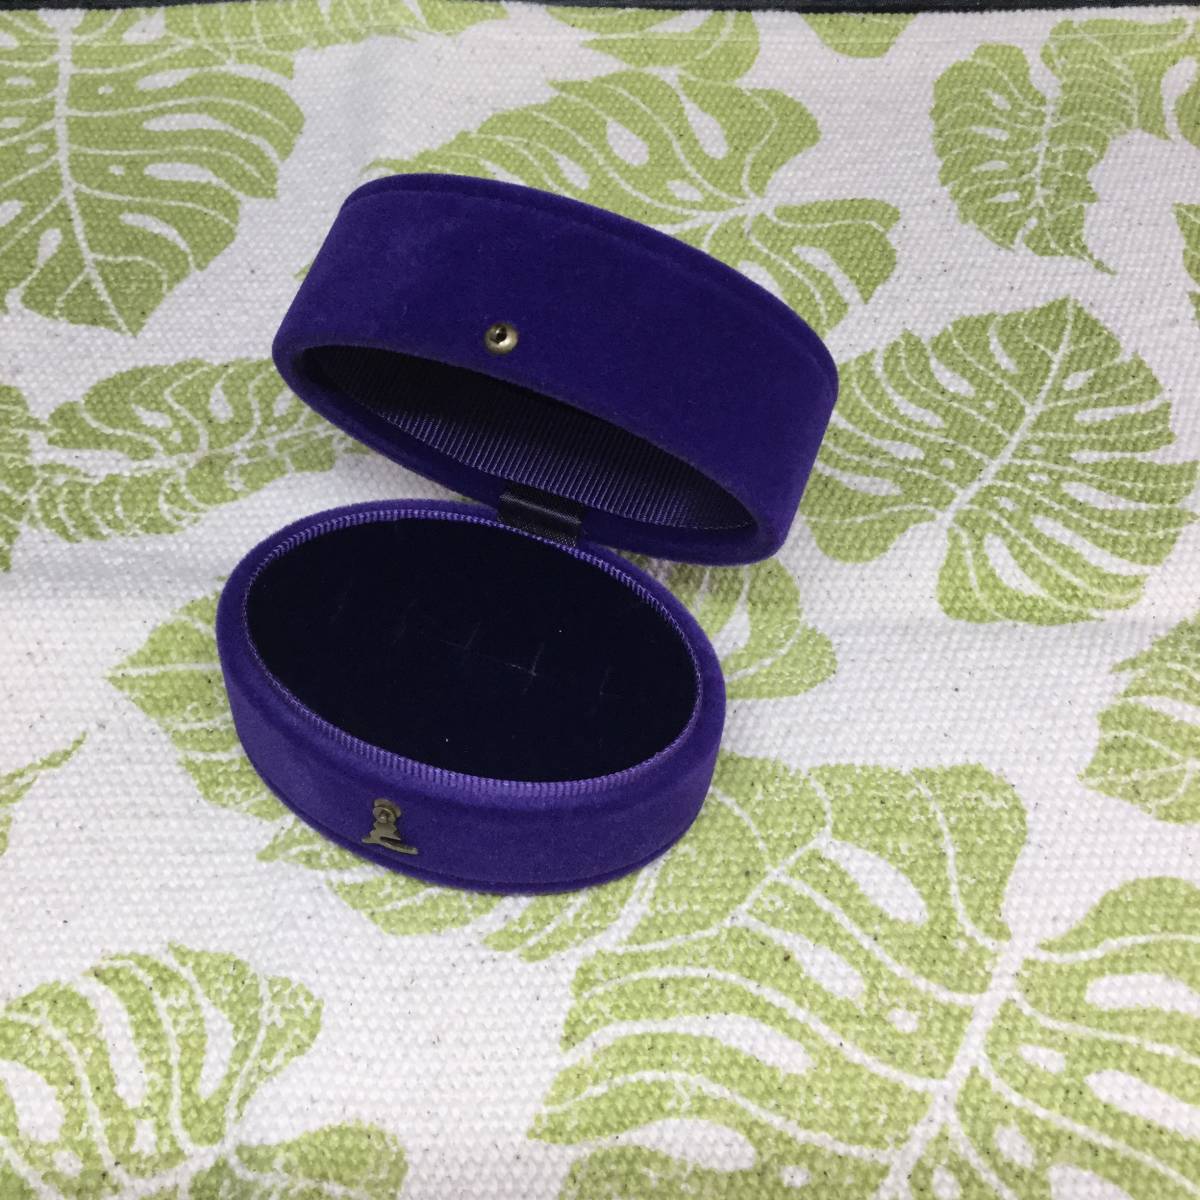 [i] agete Agete box коробка пустой коробка ювелирные изделия кейс сумка фиолетовый защита пакет 